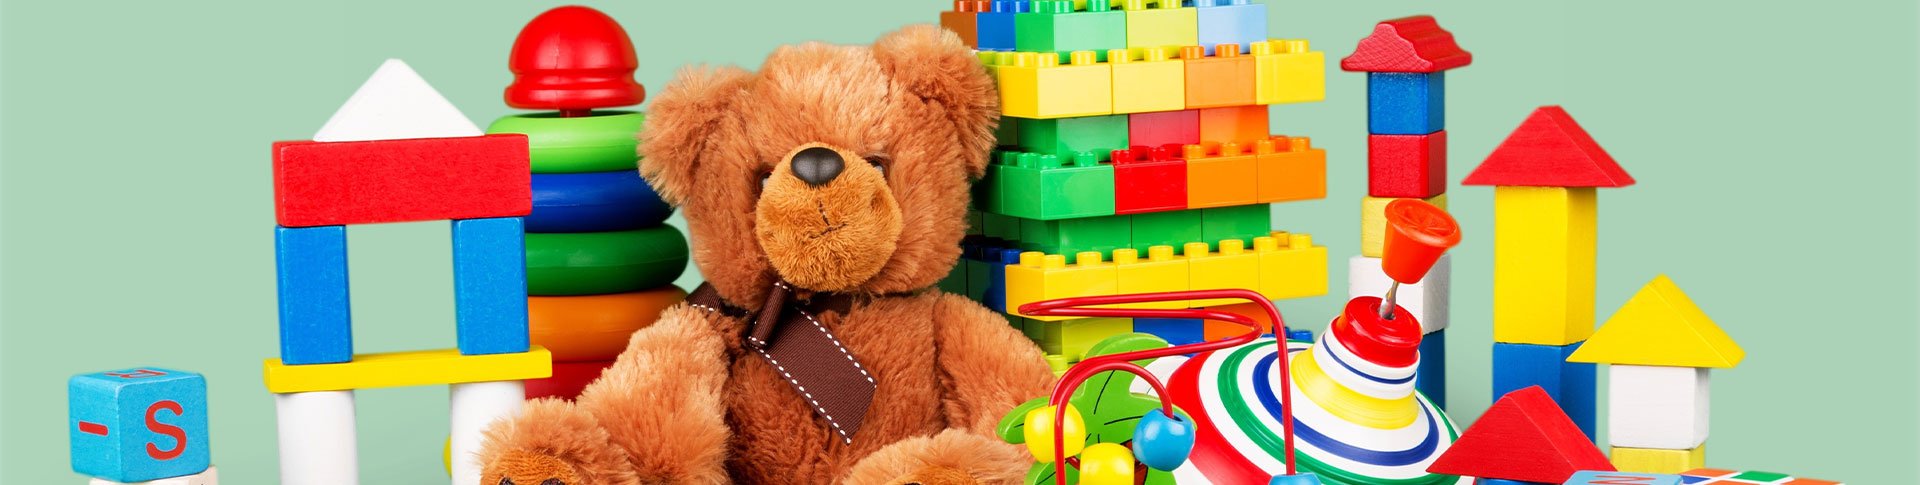 VIDÉO] Réglementation des jouets : les mesures de contrôle renforcées